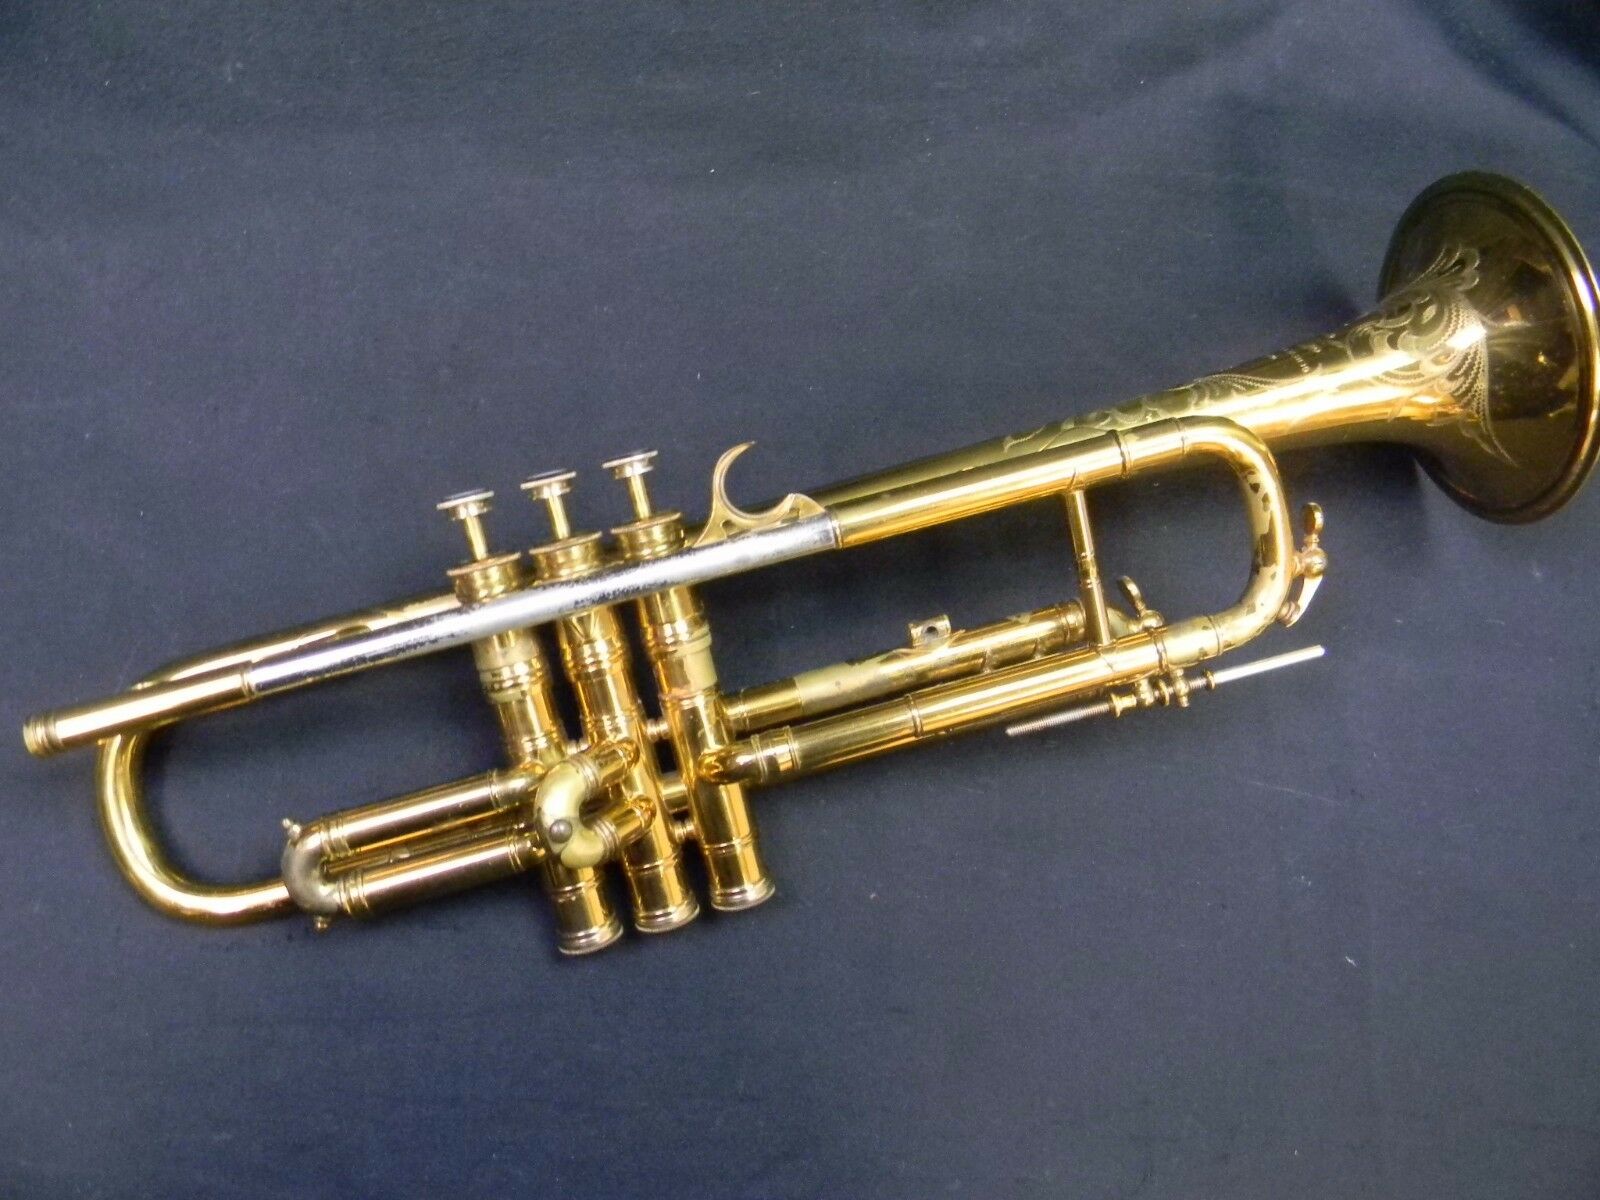 conn trumpet serial number n18733 model